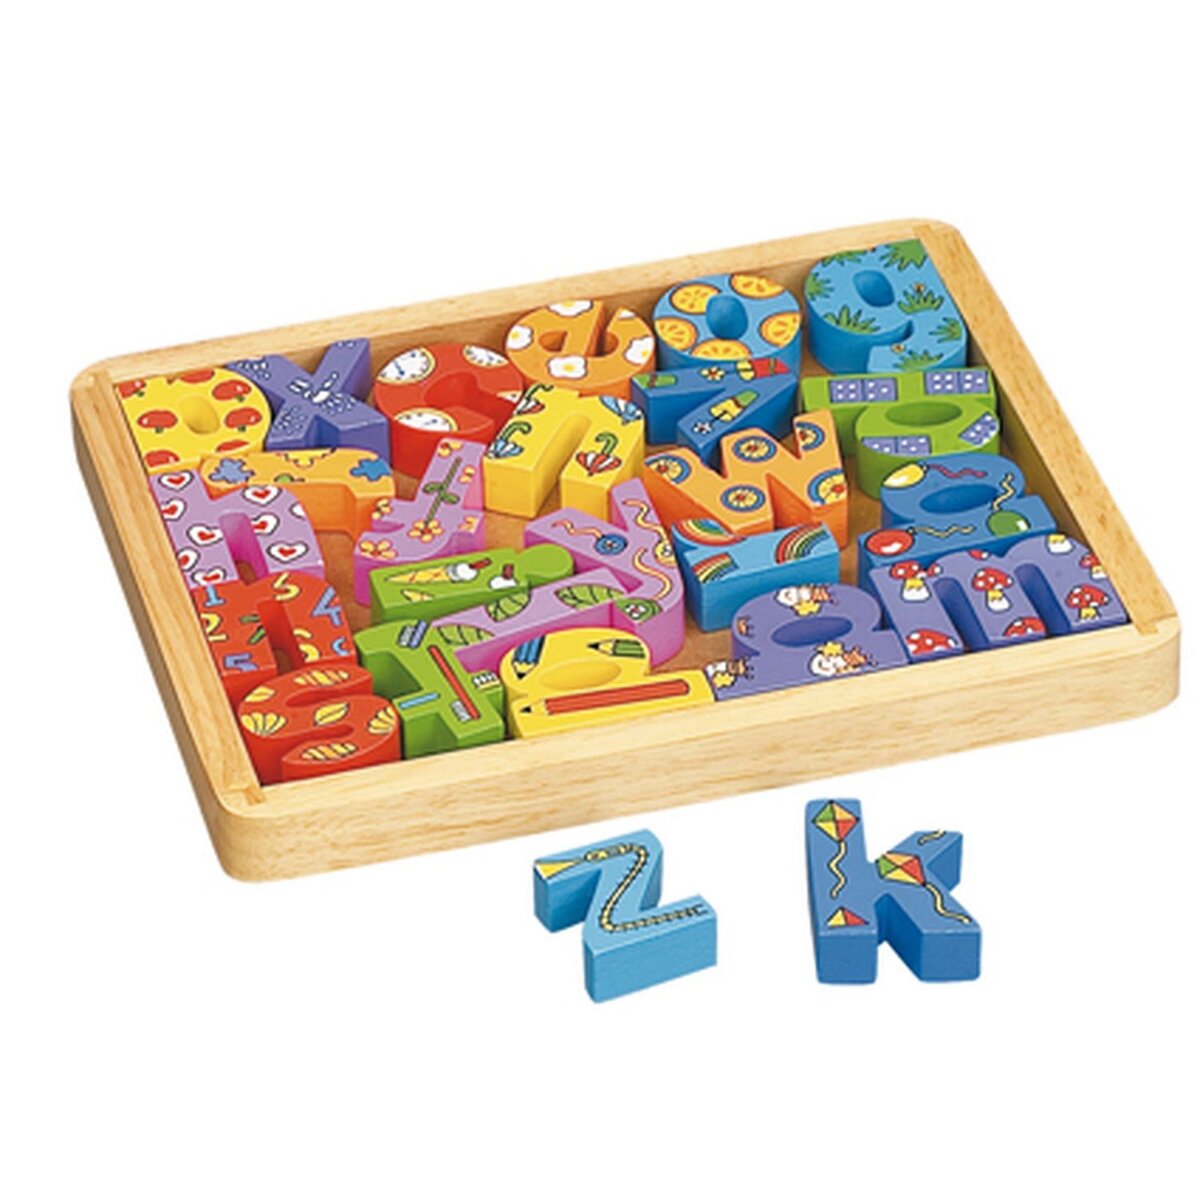 Alphabets en bois Puzzle jouets pour enfants 3 4 5 ans, Plateau de puzzles